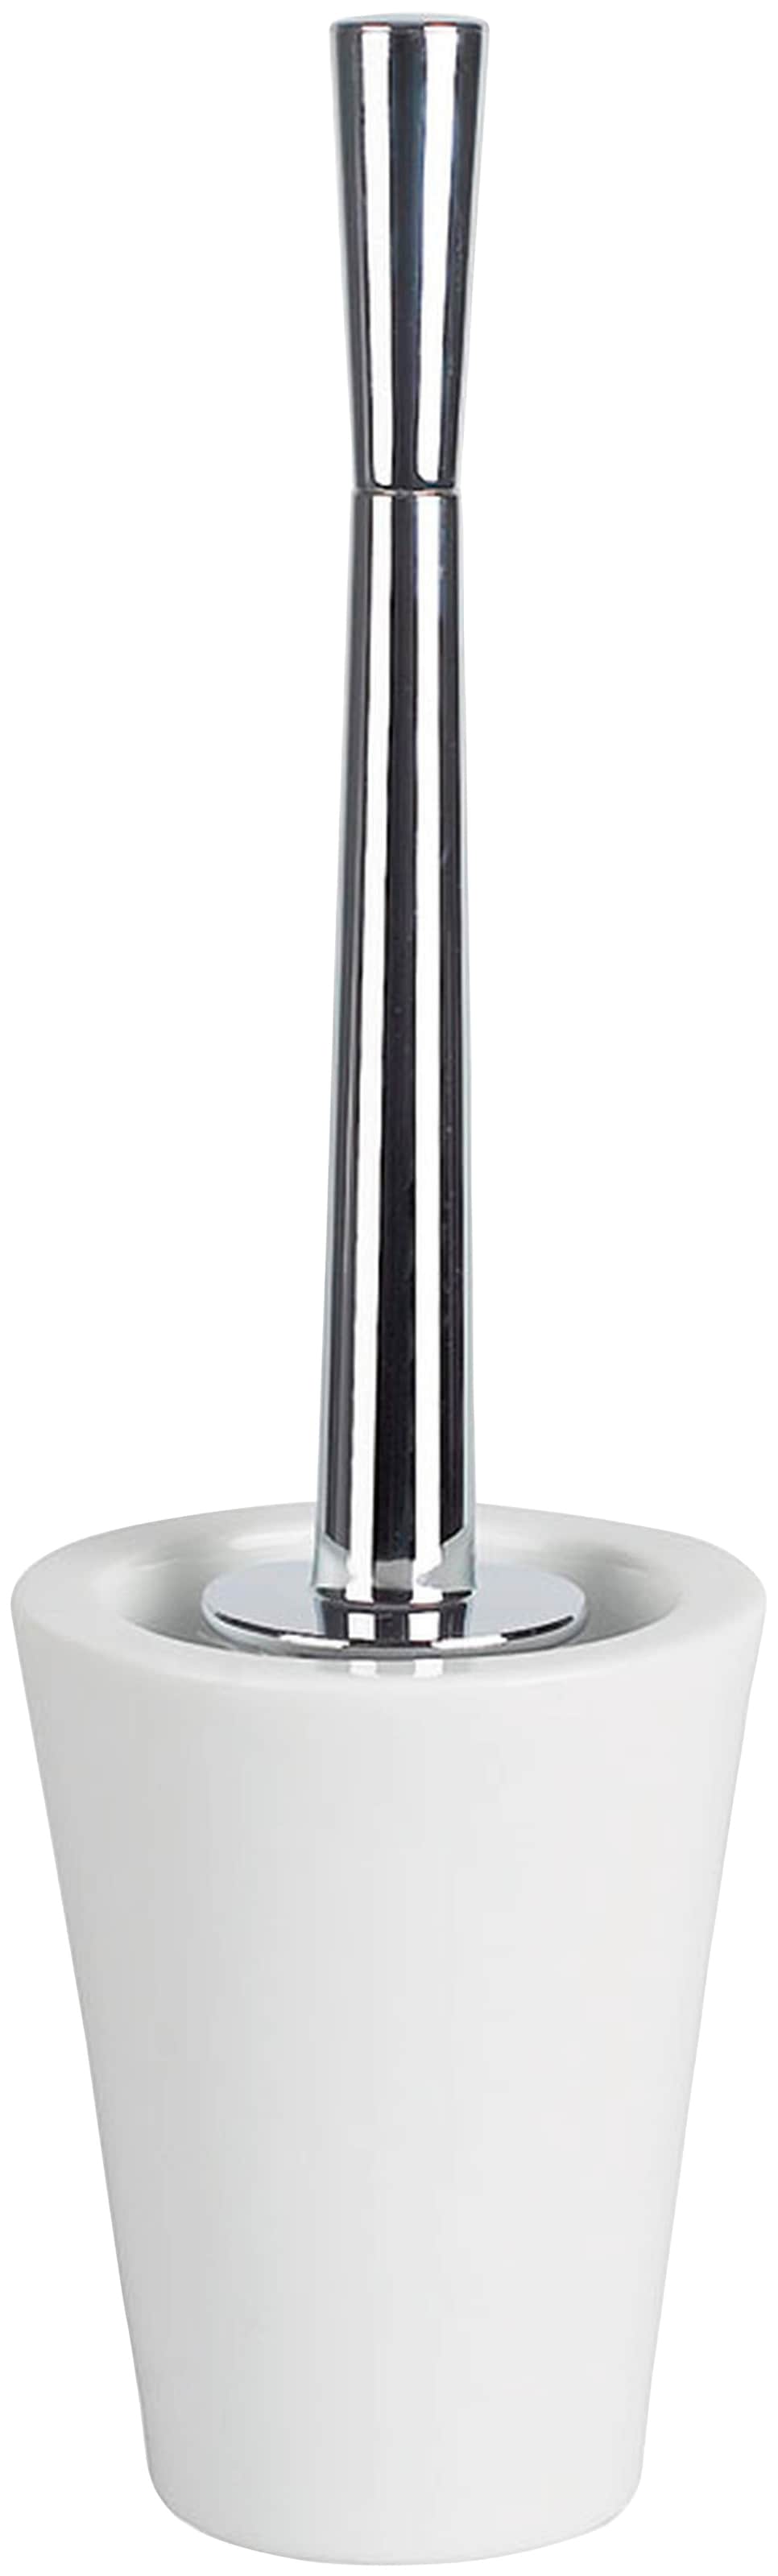 spirella WC-Garnitur »MAX Light«, aus Acrylglas, WC-Bürste ist auswechselbar